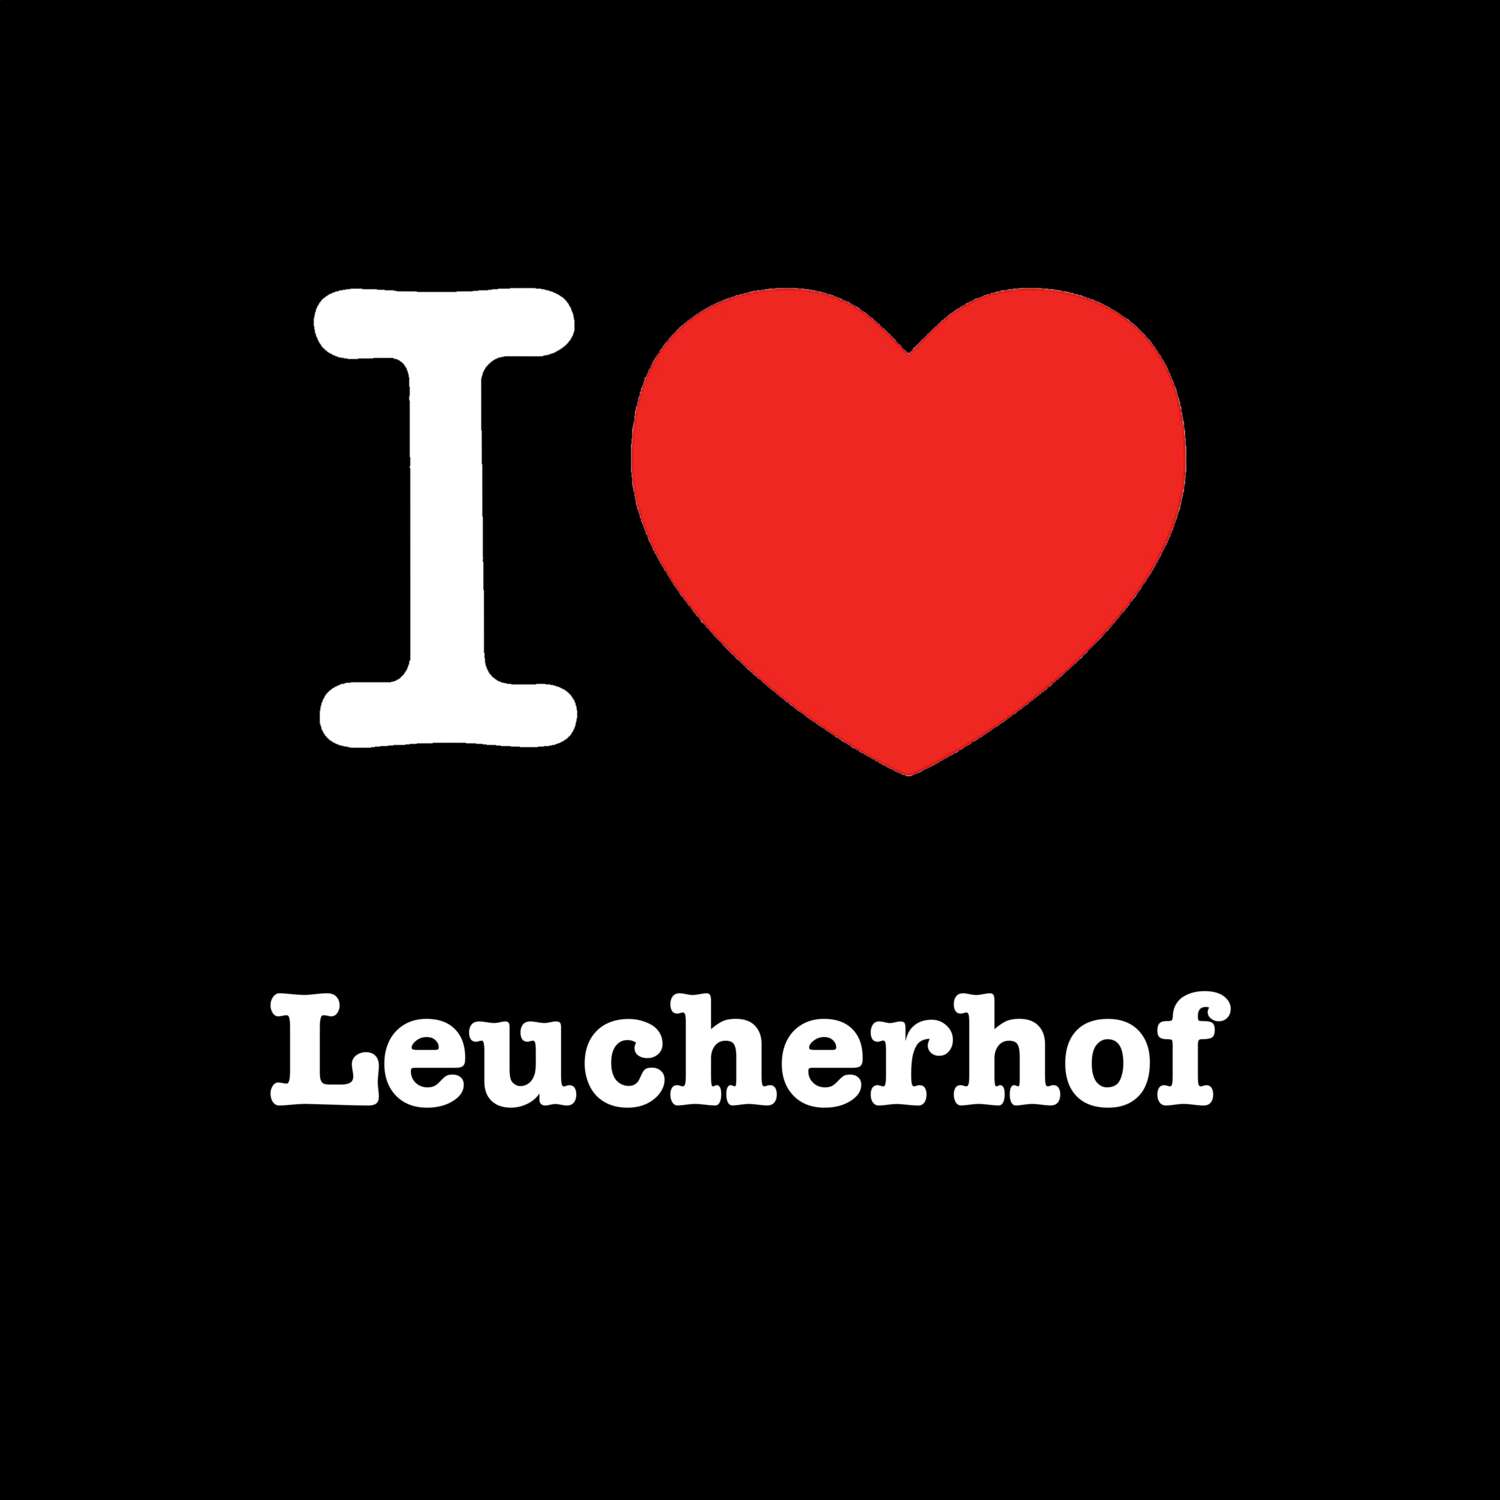 Leucherhof T-Shirt »I love«